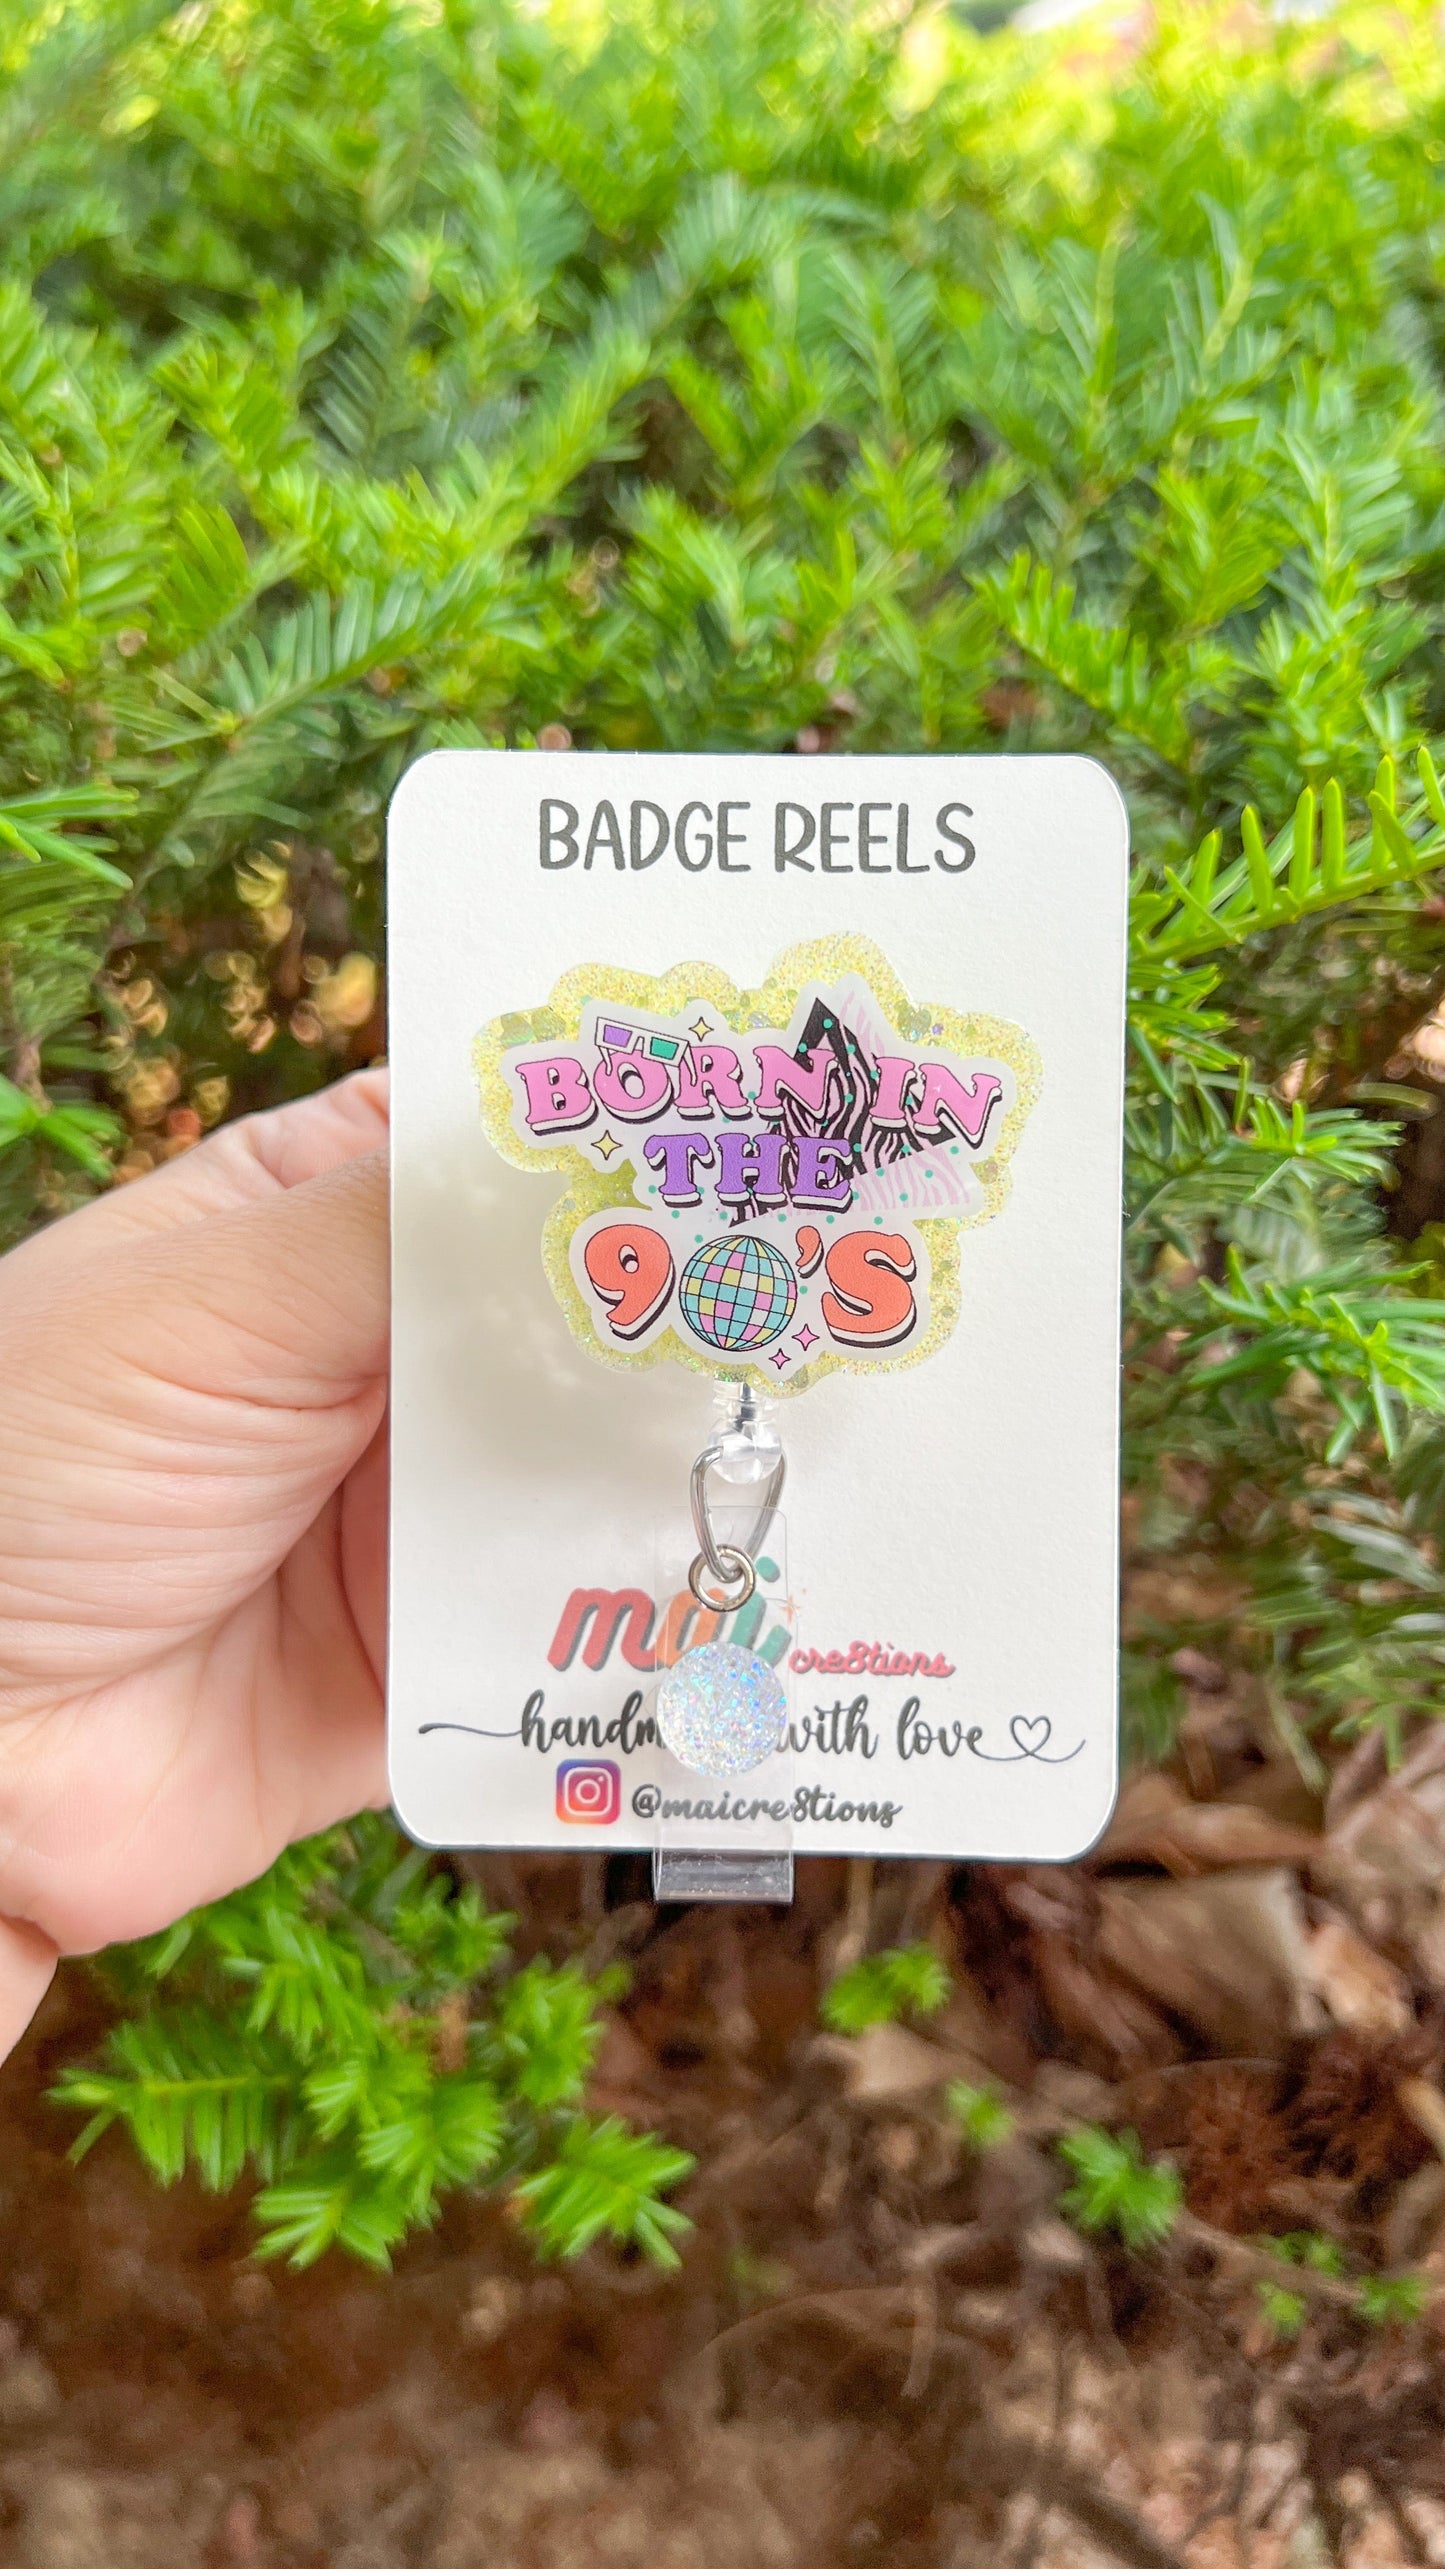 born-in-90s-badge-reels